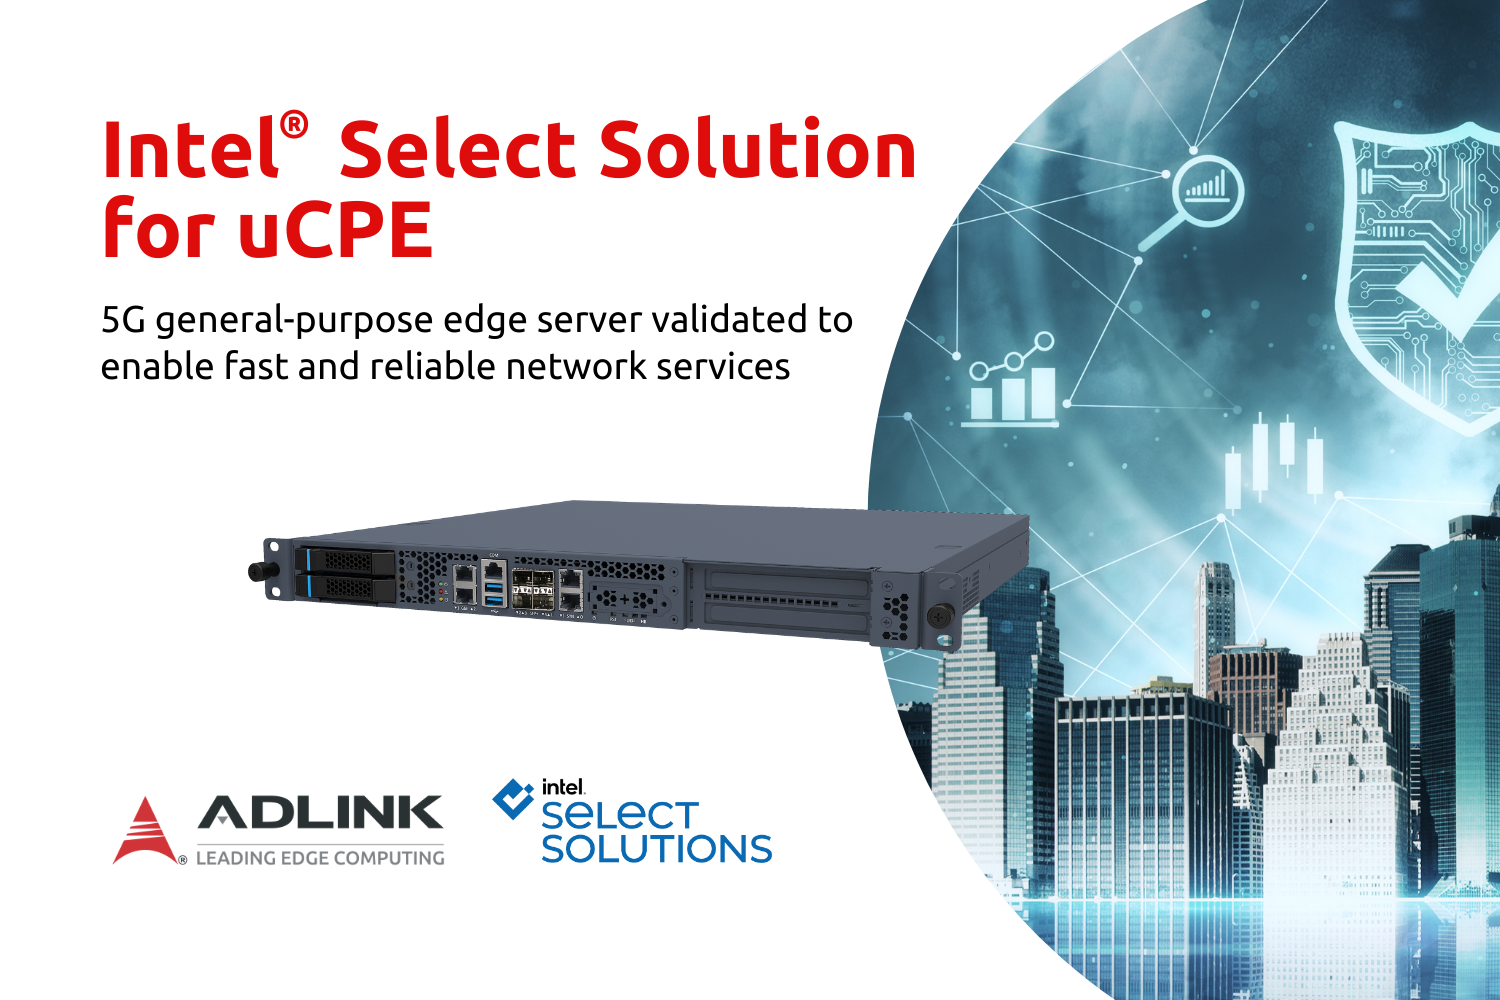 凌华科技MECS-6110边缘服务器通过面向通用客户端设备（uCPE）的英特尔精选解决方案认证